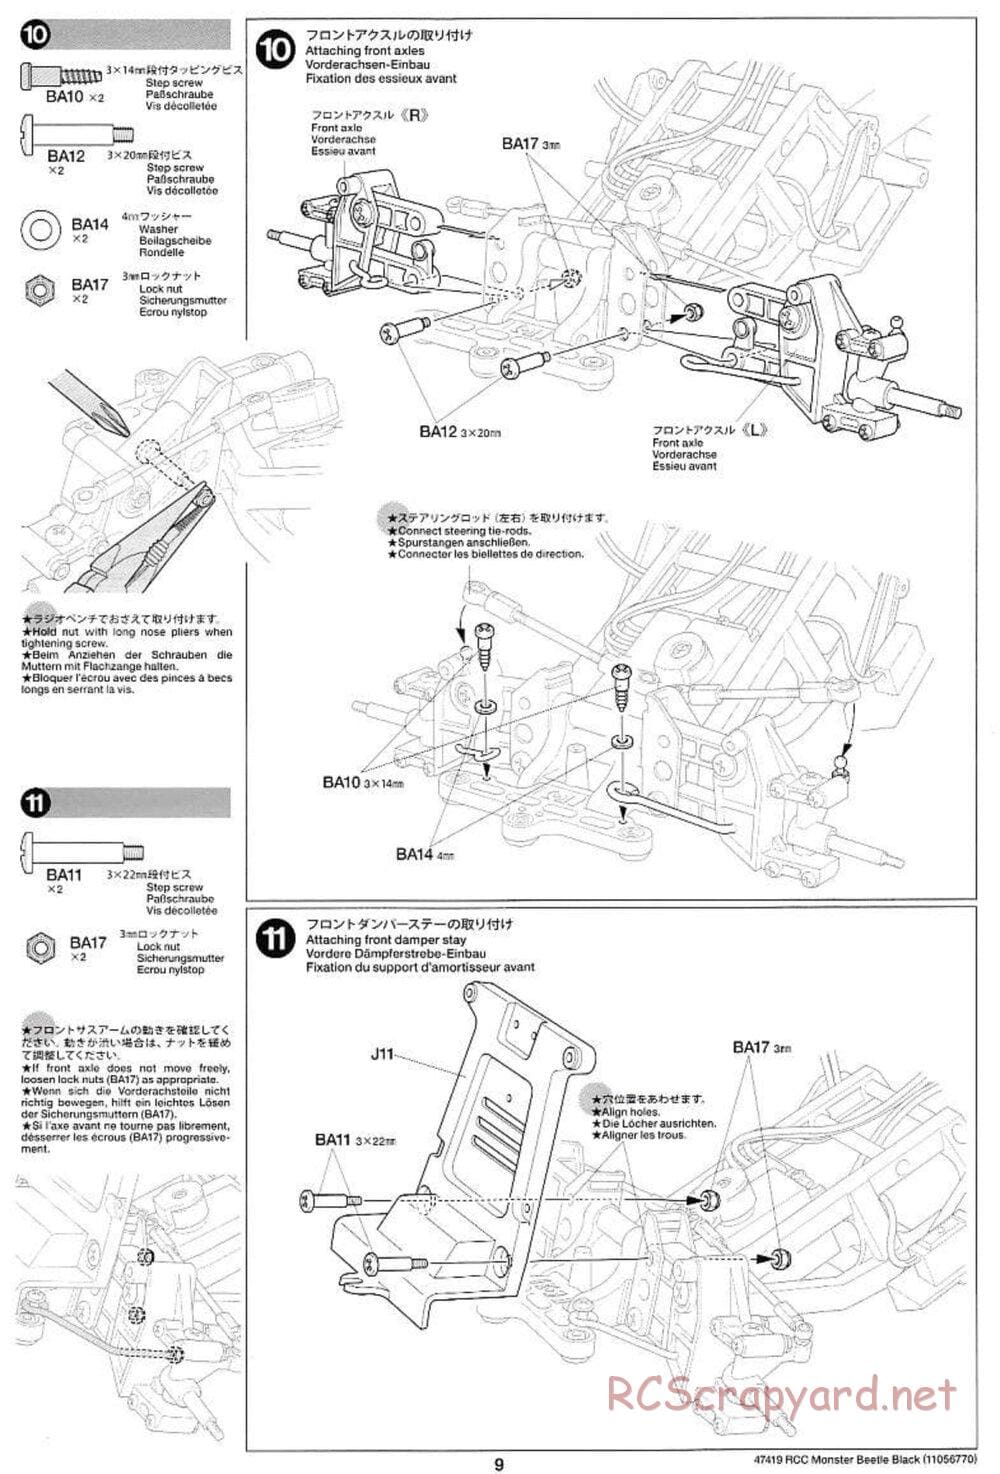 Tamiya - Monster Beetle Black Edition - ORV Chassis - Manual - Page 9